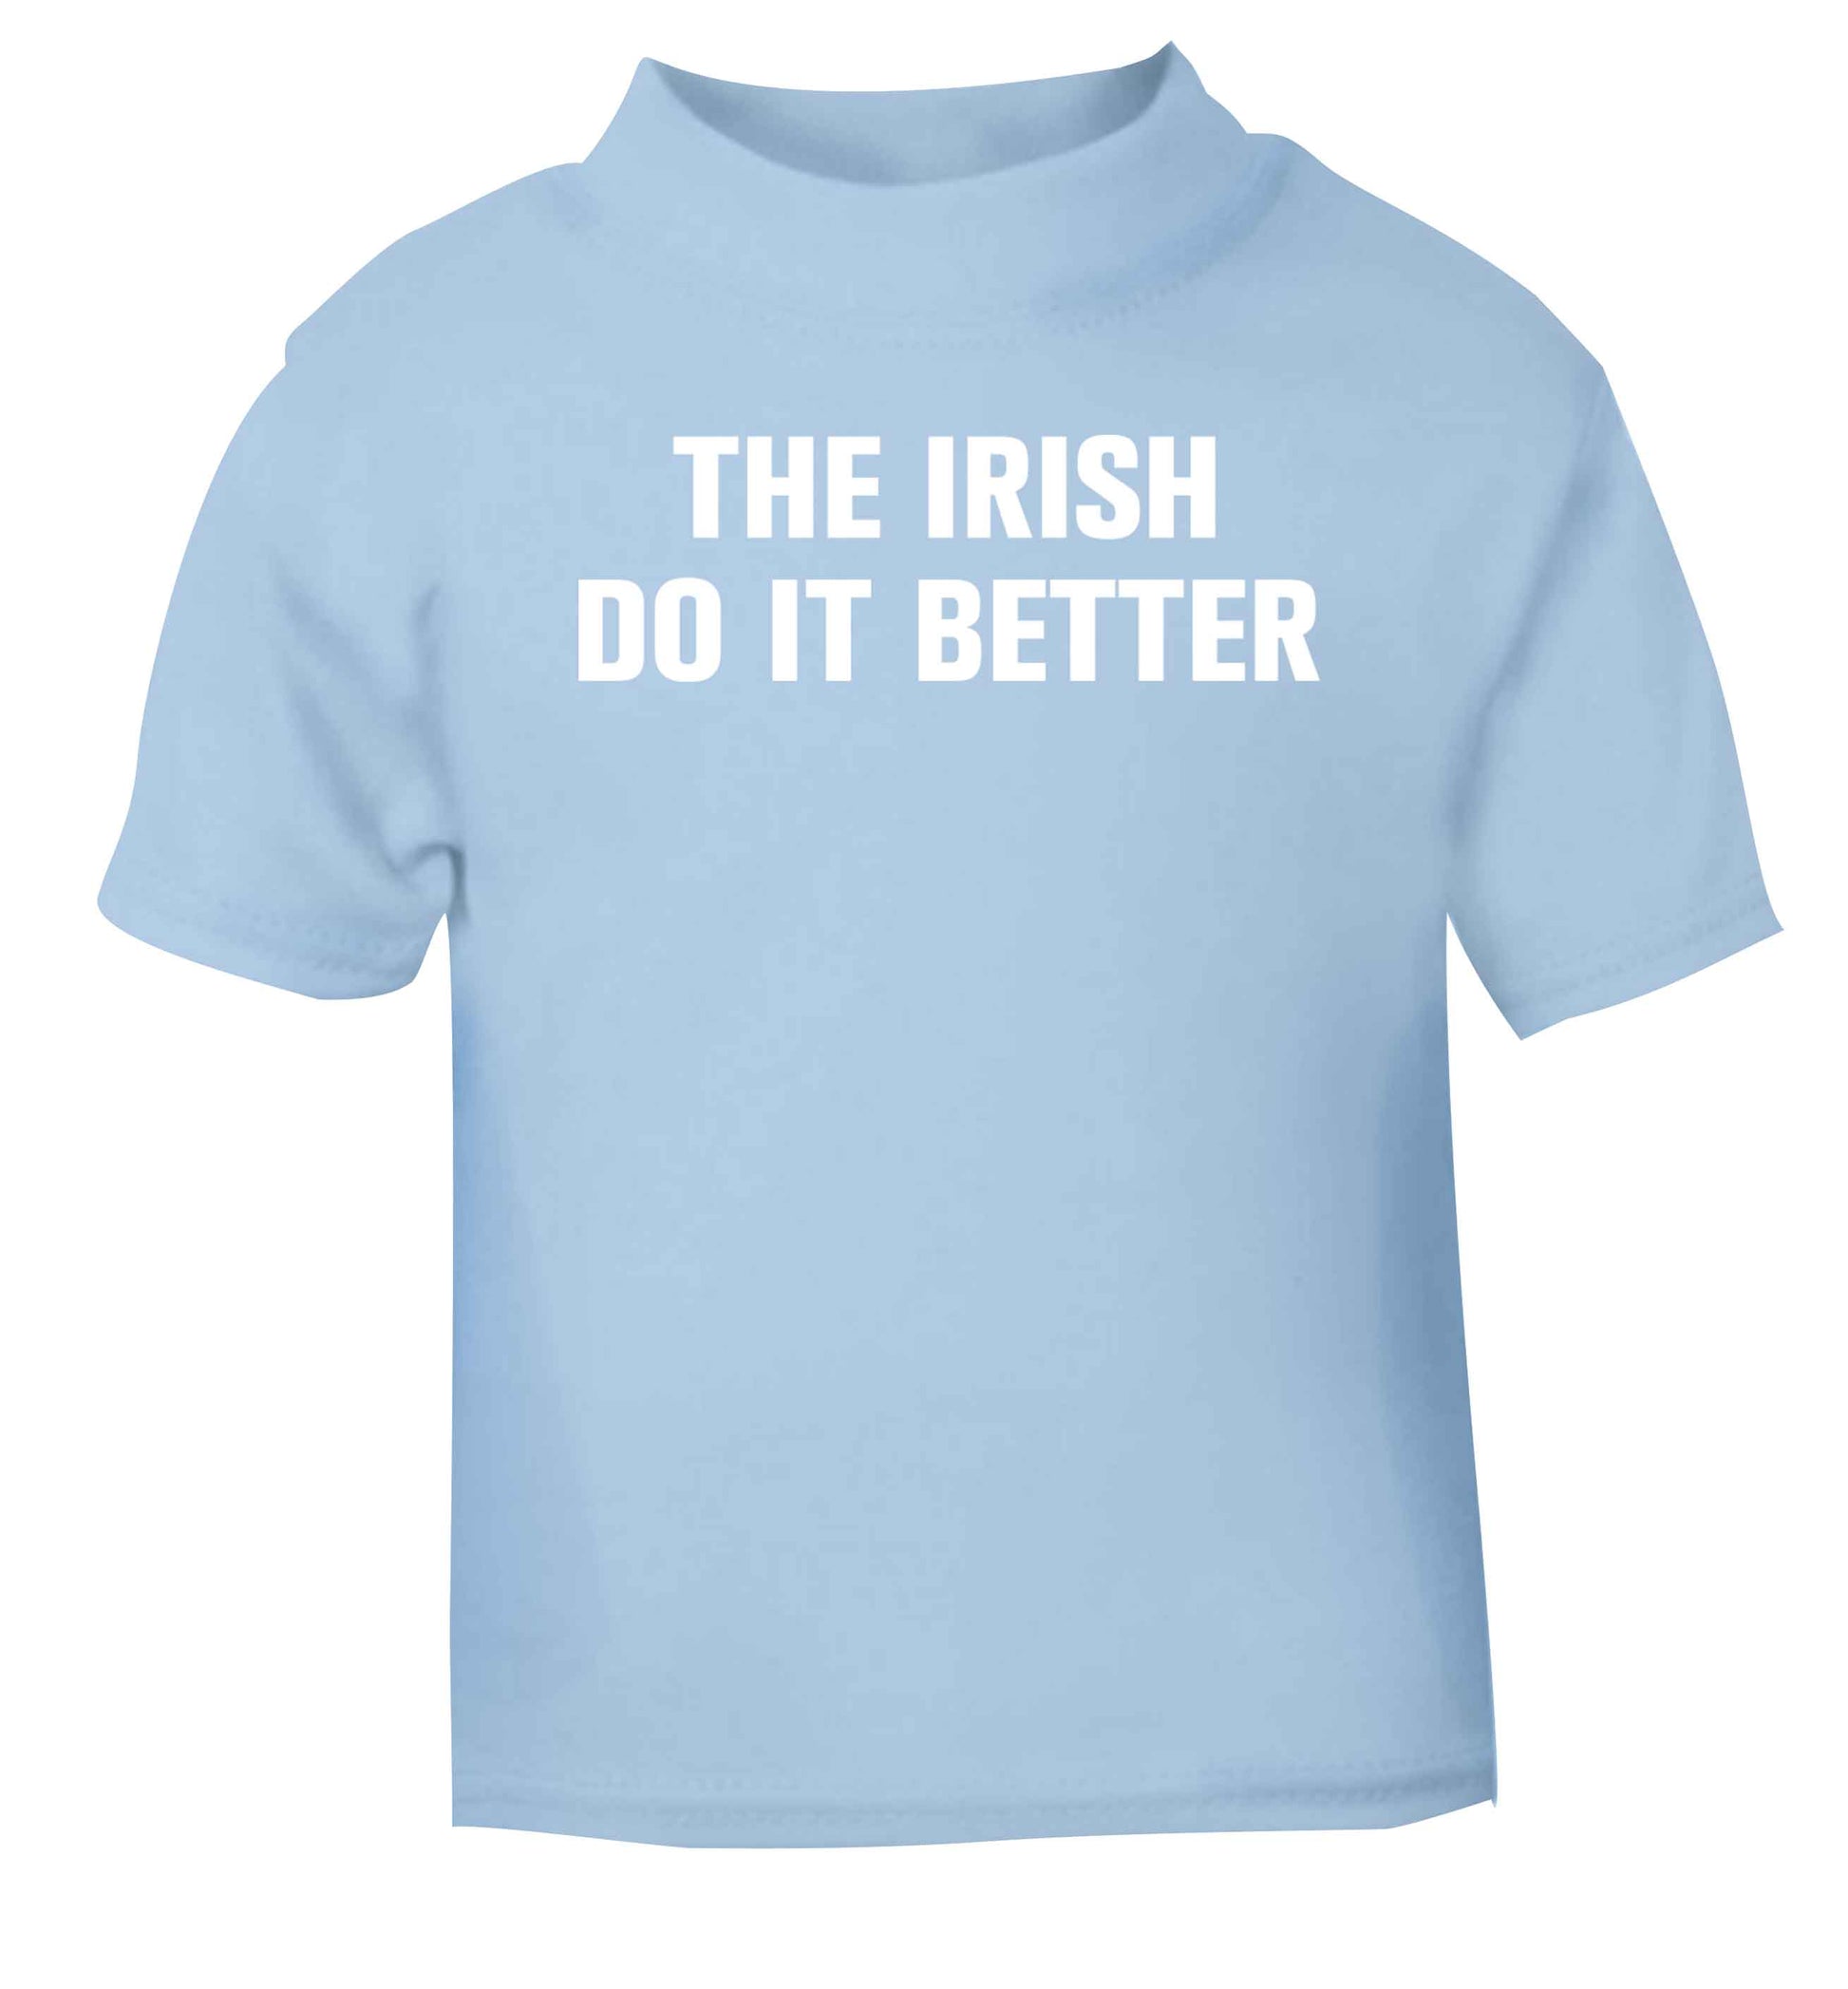 The Irish do it better light blue baby toddler Tshirt 2 Years